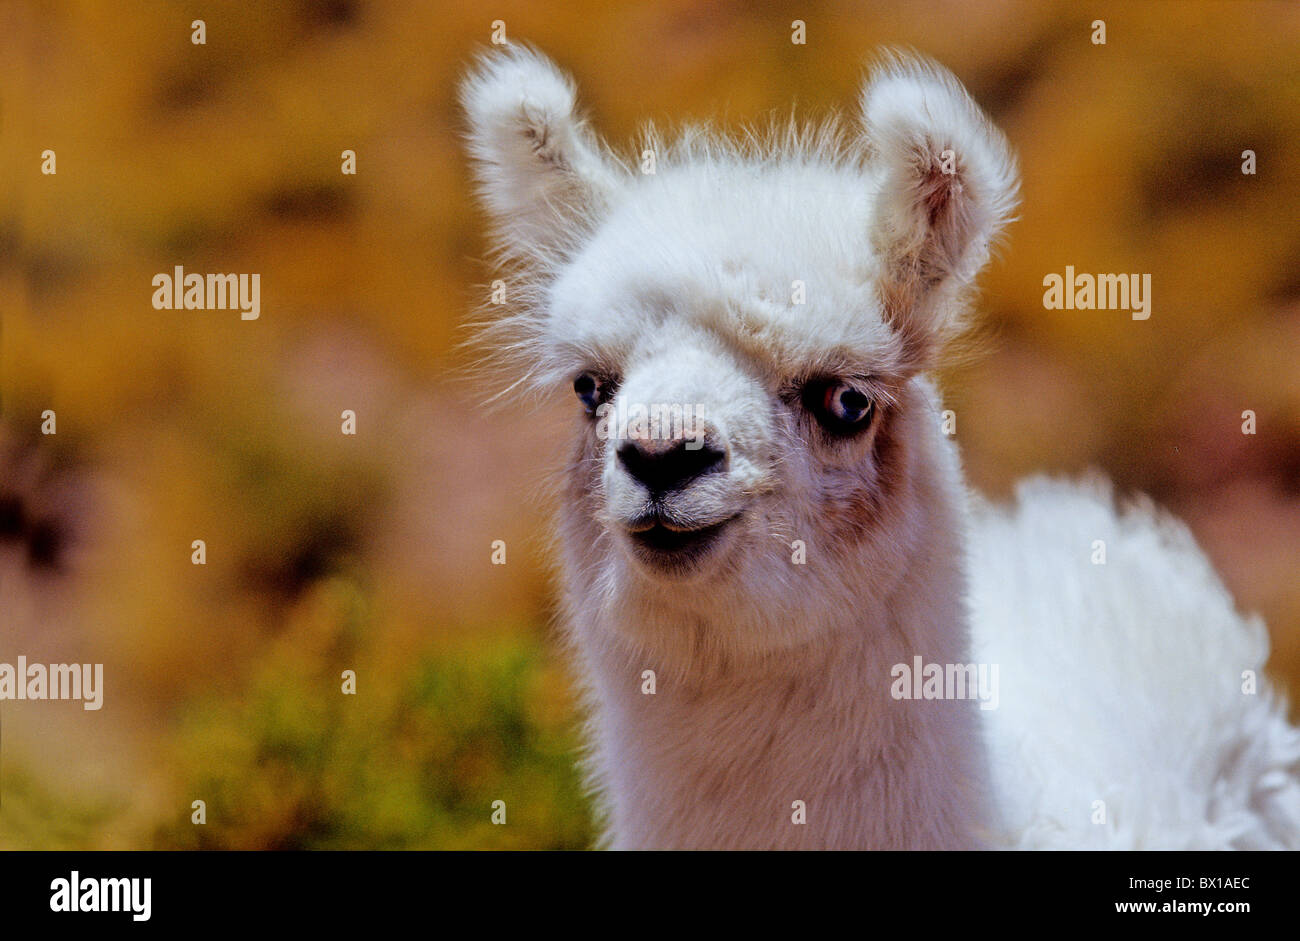 Andes Regione di Atacama cile america del sud Lama Lama guanicoe glama animale Foto Stock